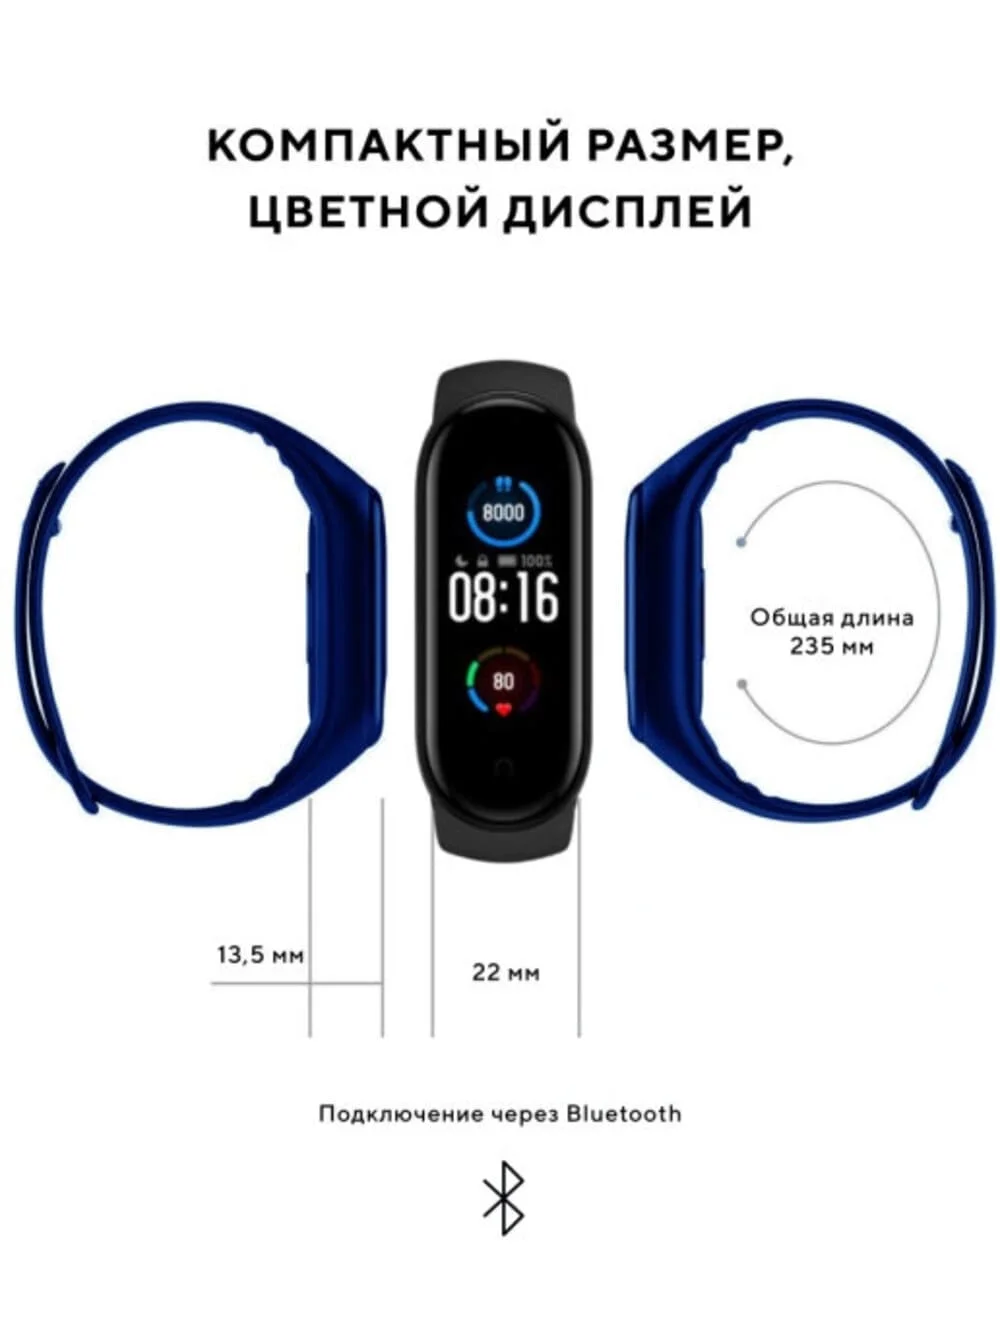 Умные часы M3 смарт фитнес трекер браслет для телефона смартфона Айфон Андроид